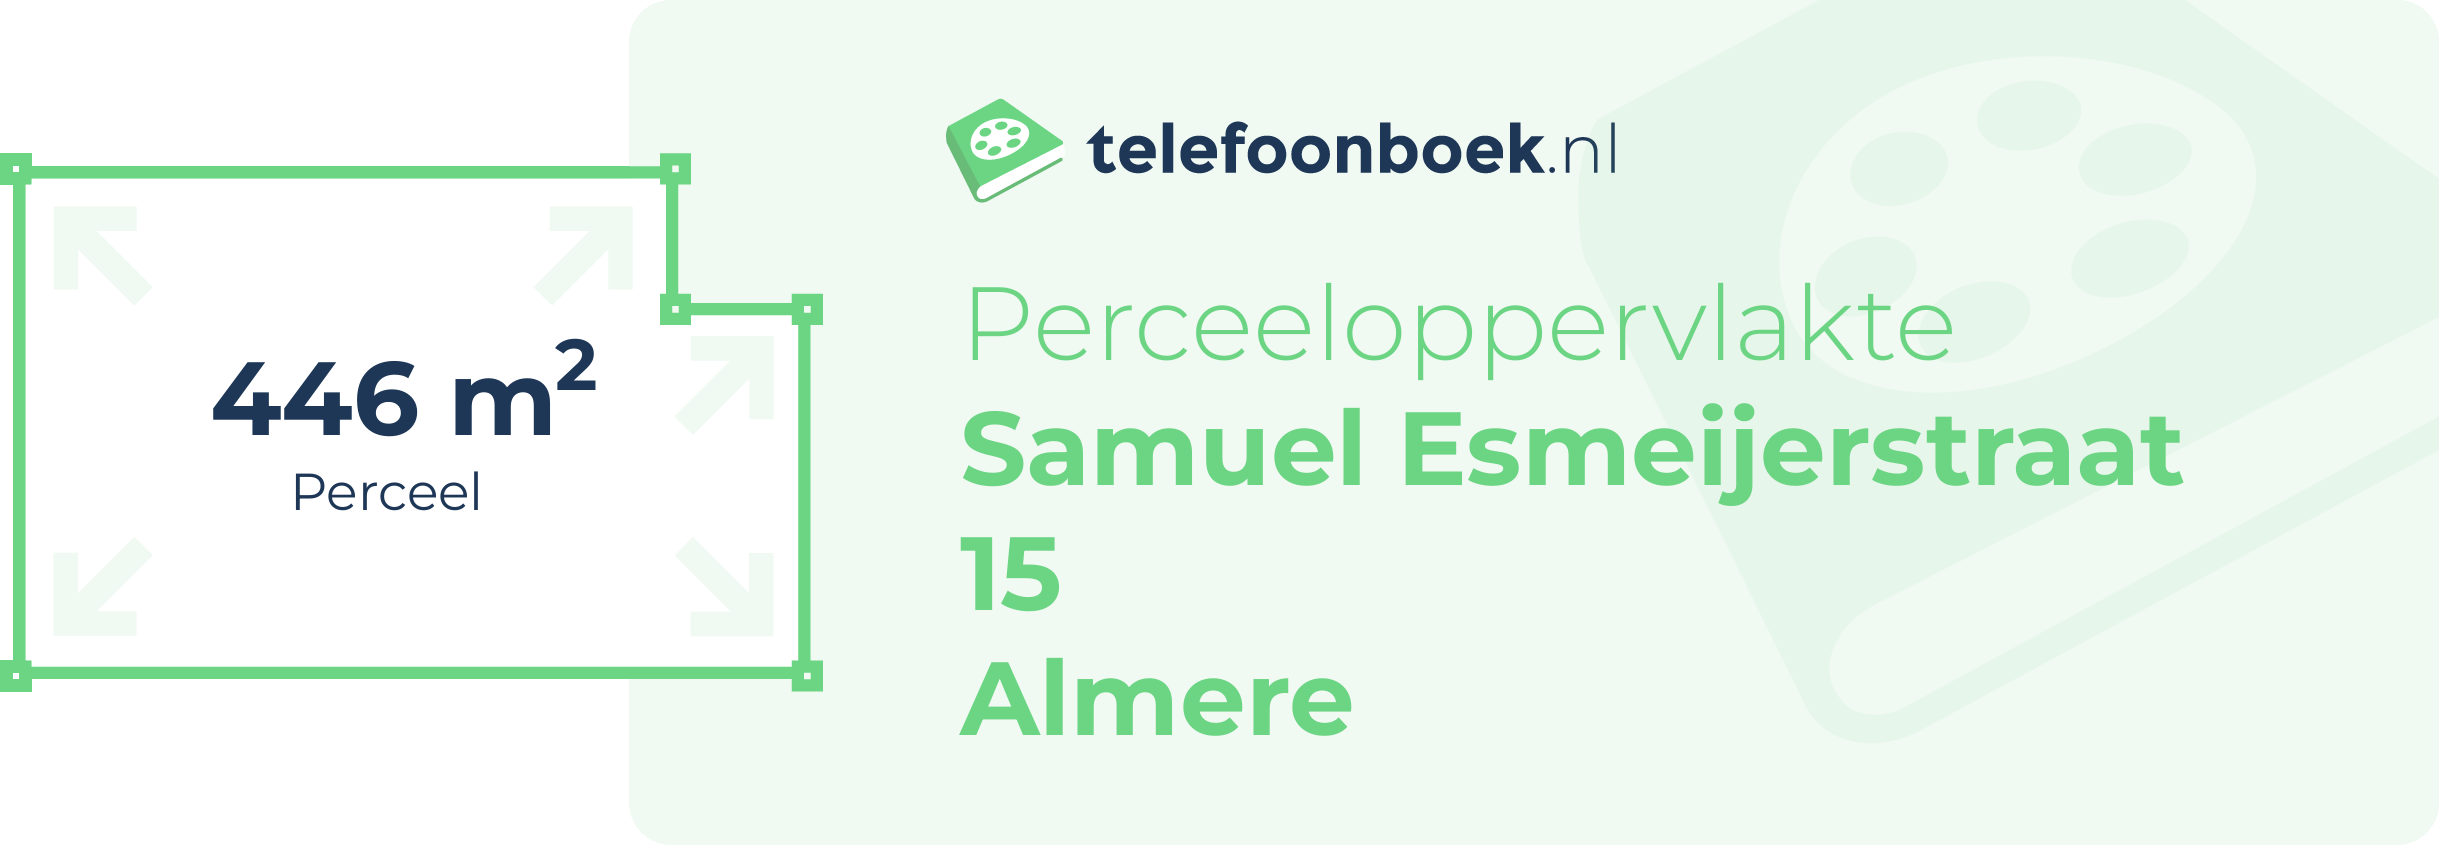 Perceeloppervlakte Samuel Esmeijerstraat 15 Almere